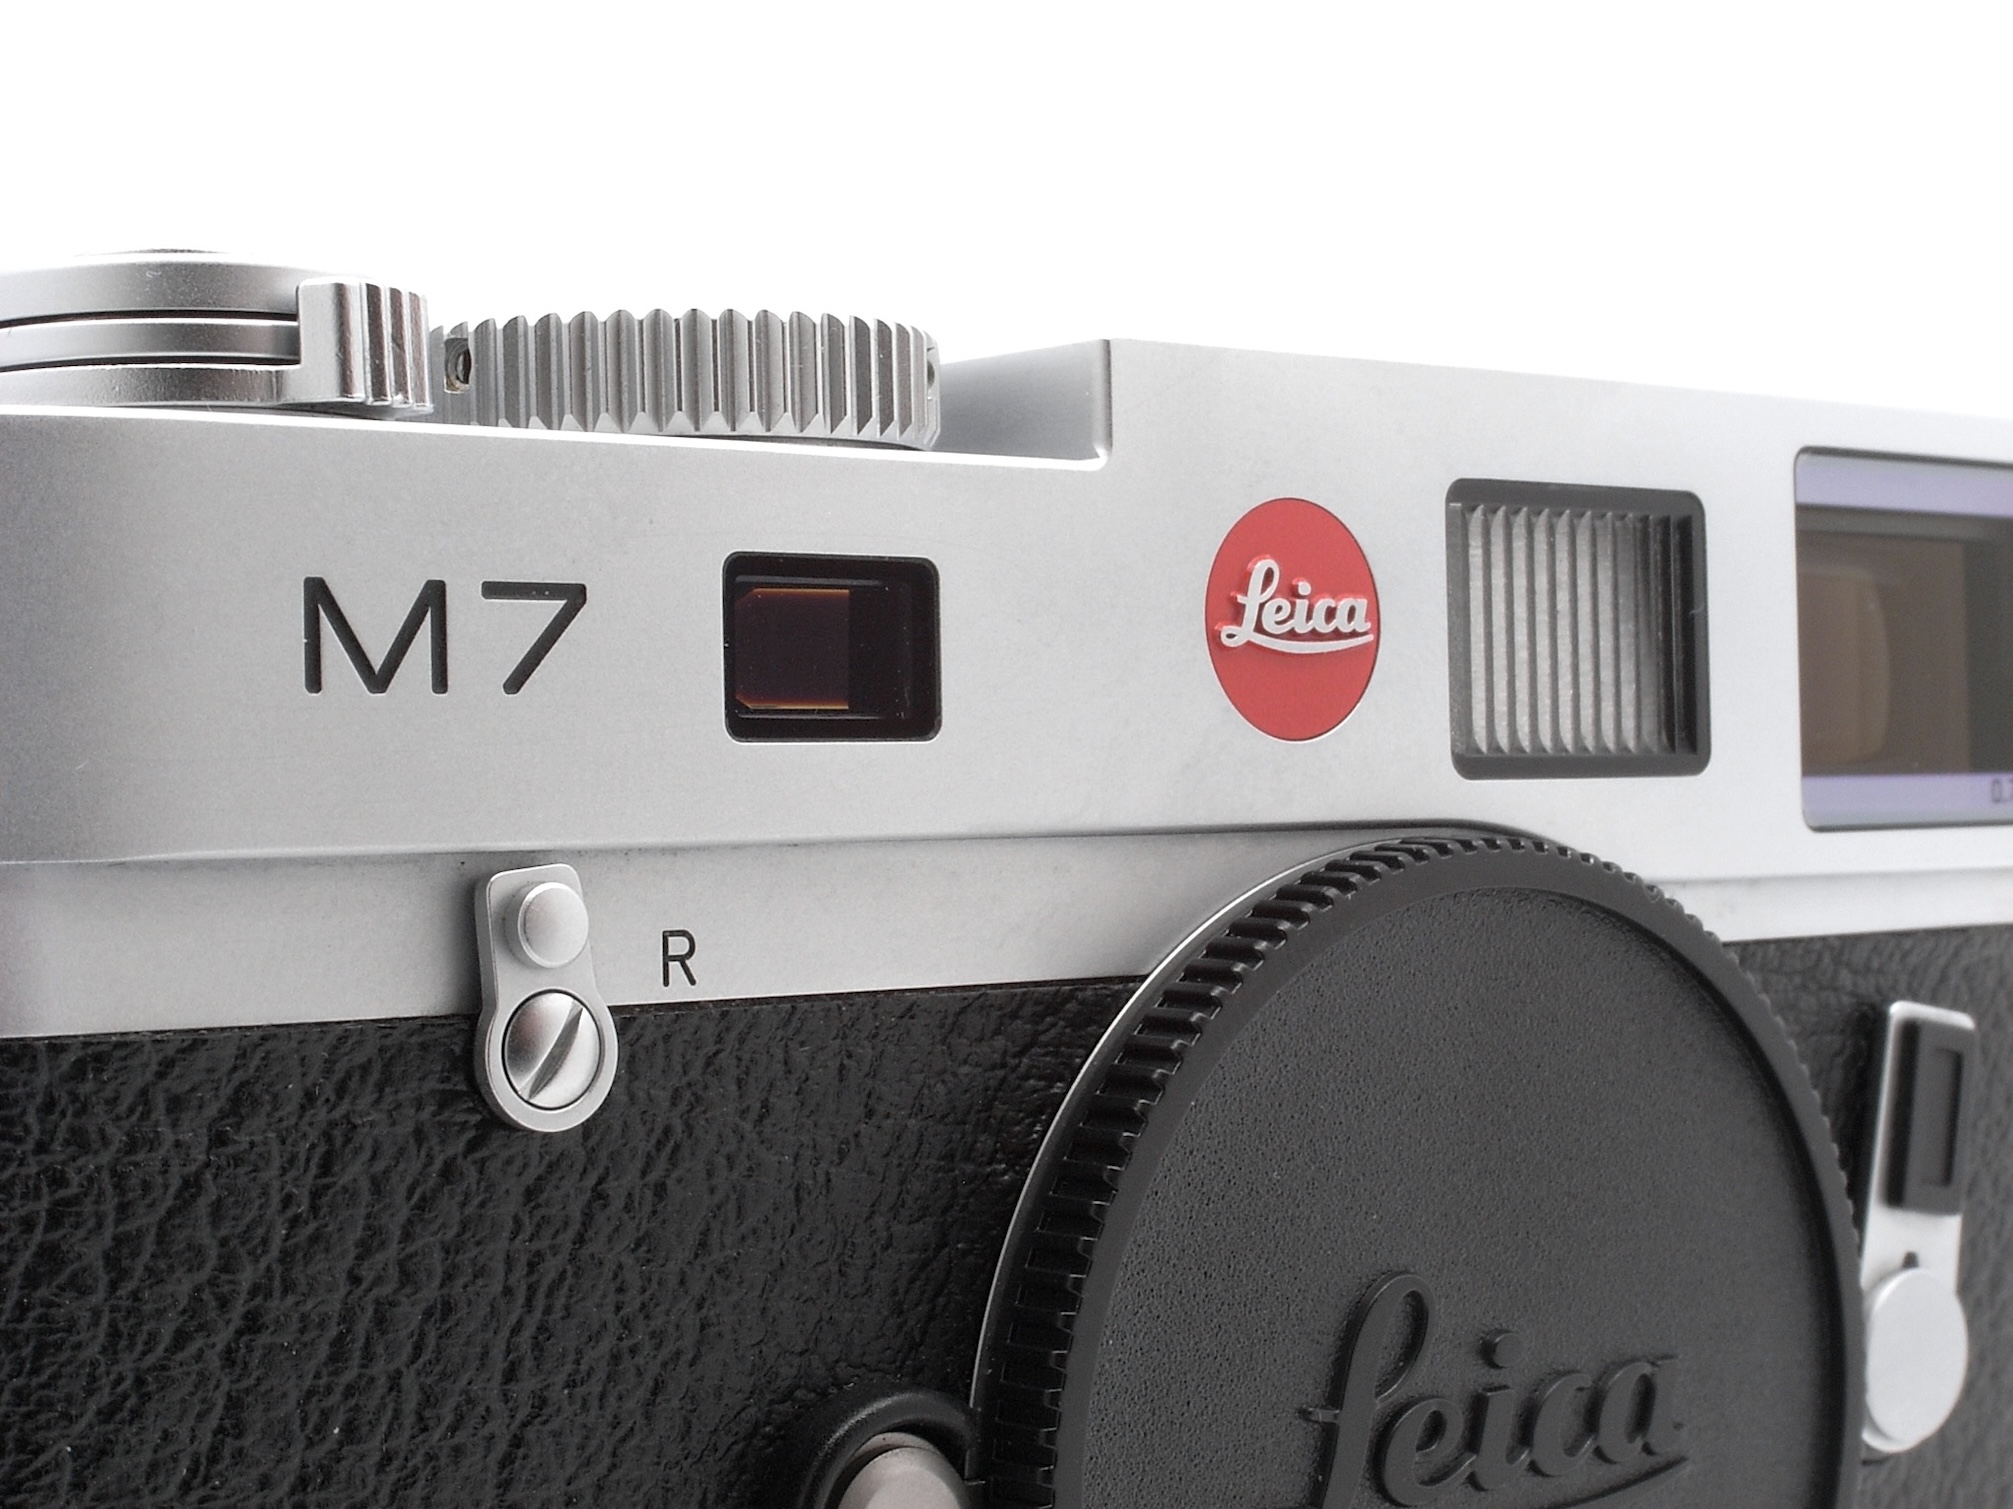 Leica M7 silver chrome